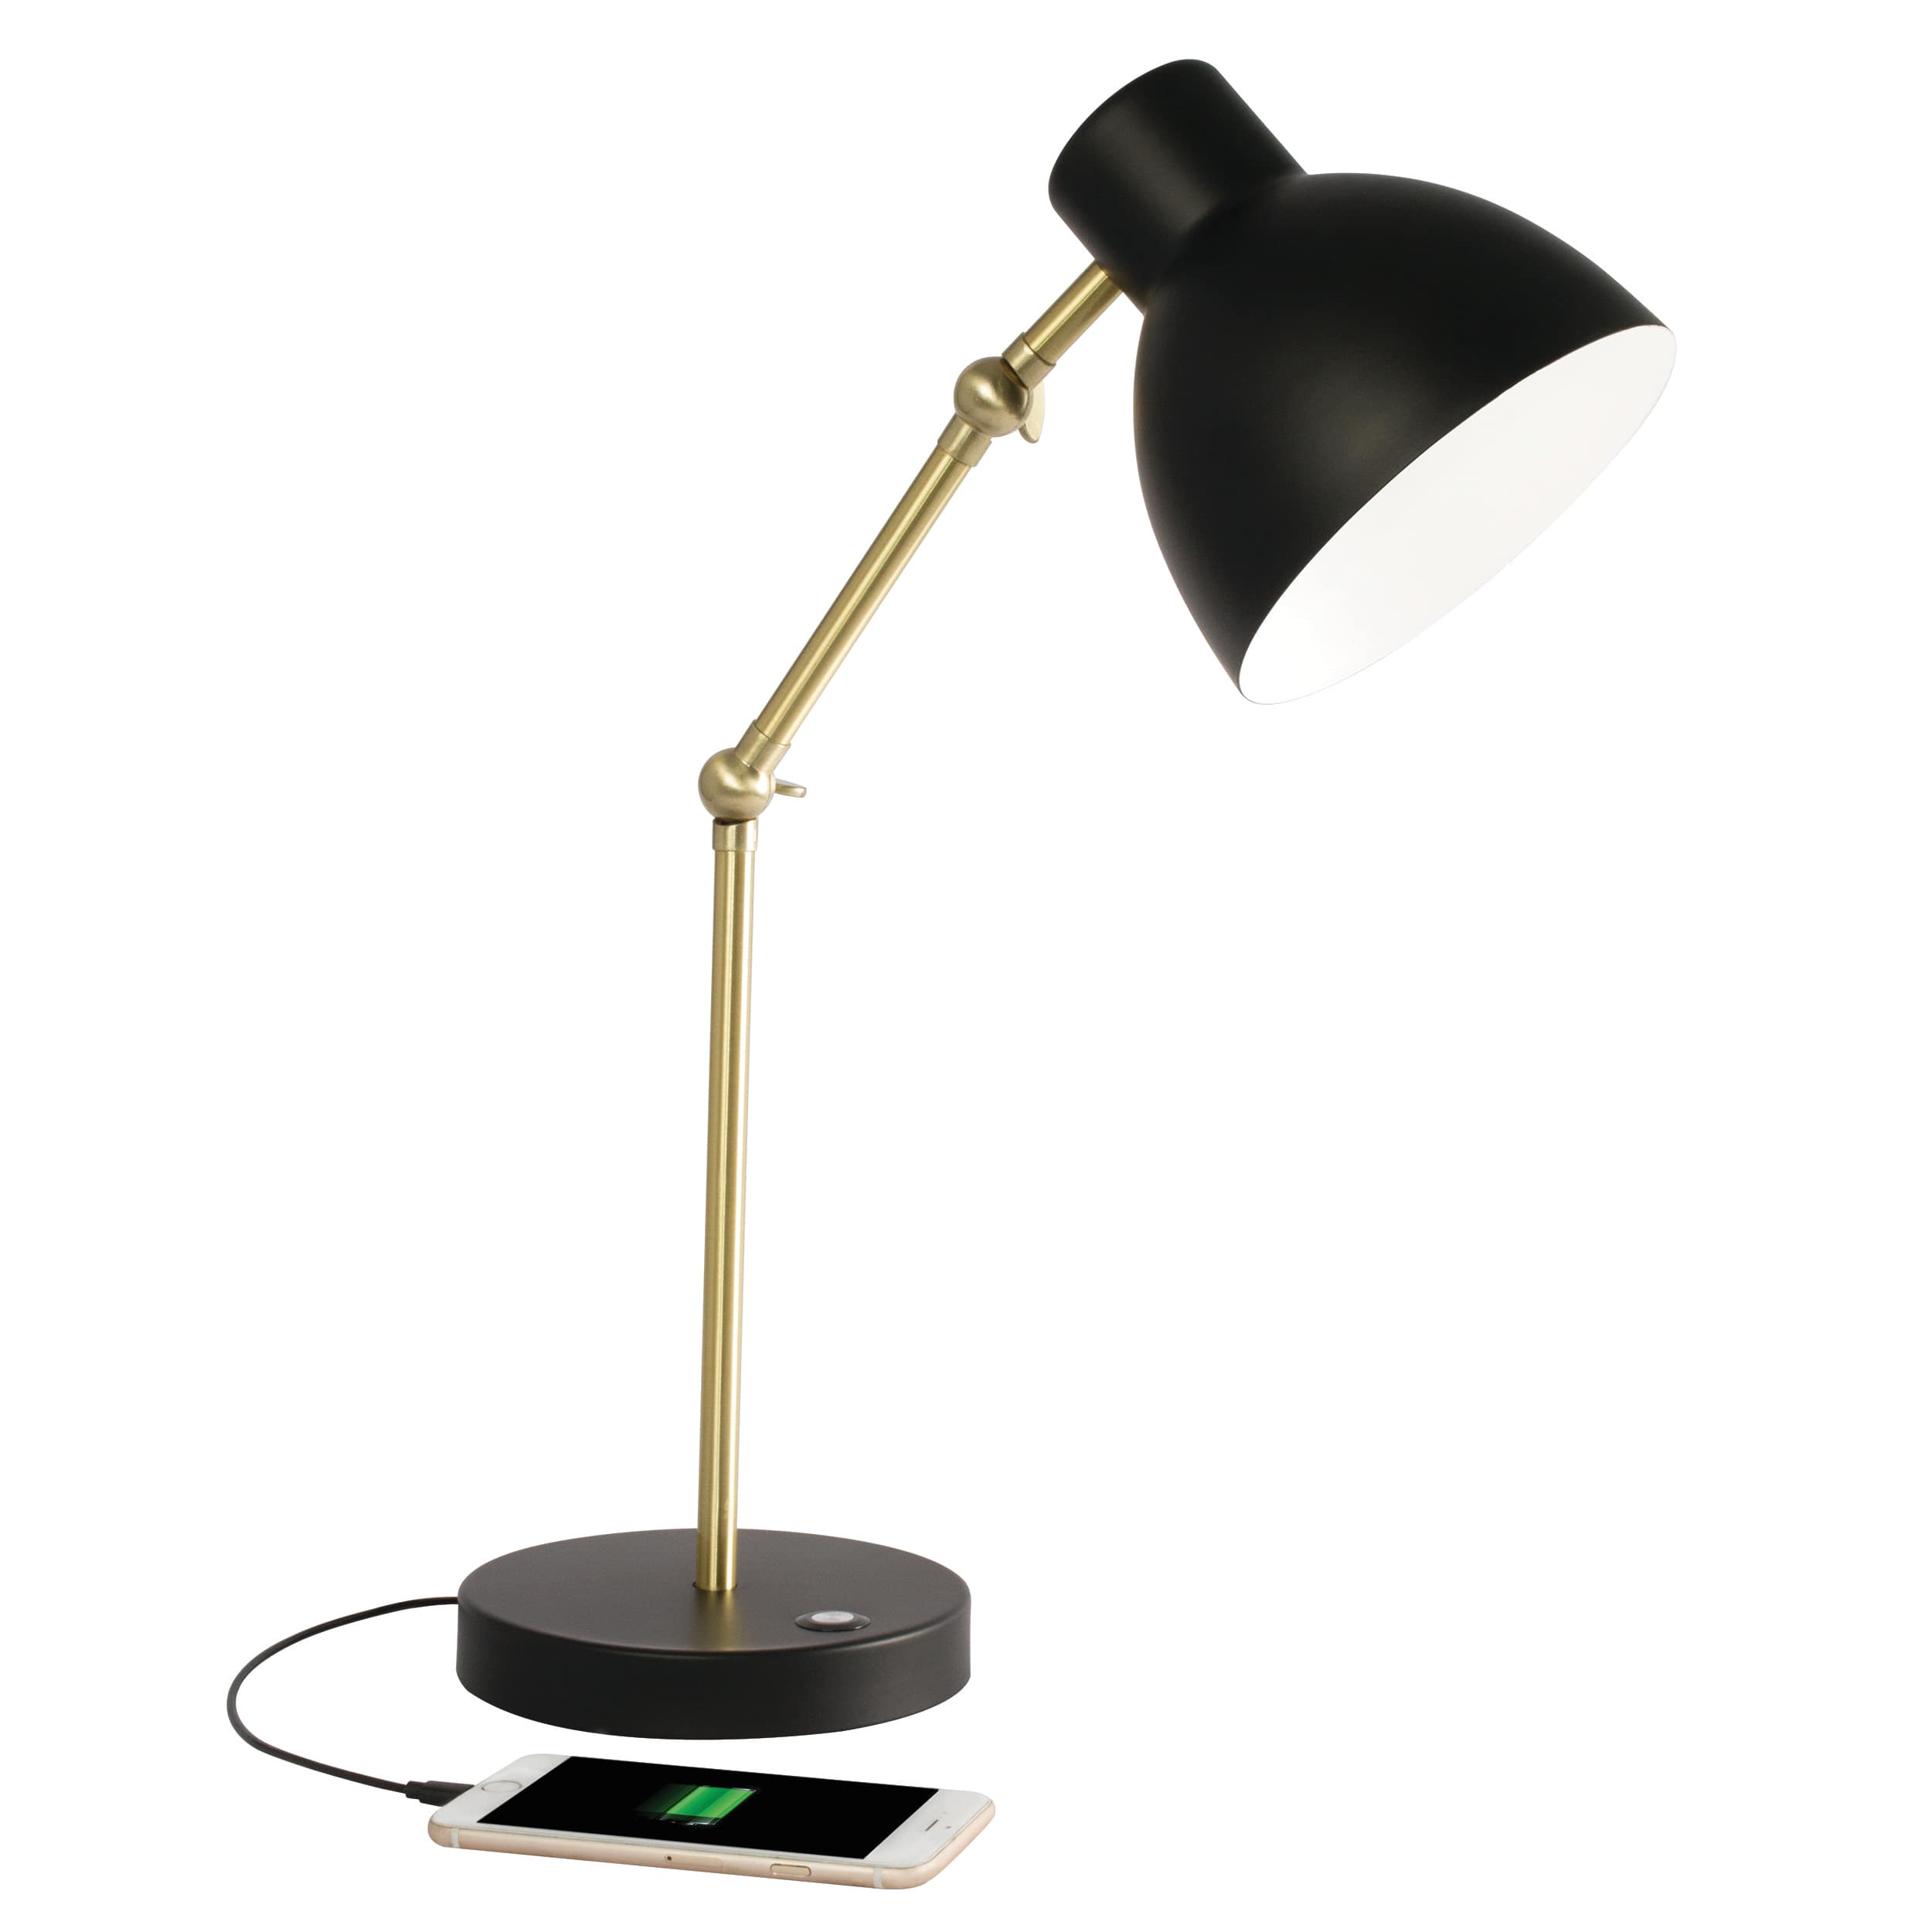 OttLite Wellness Series Adapt LED Desk Lamp with USB Port